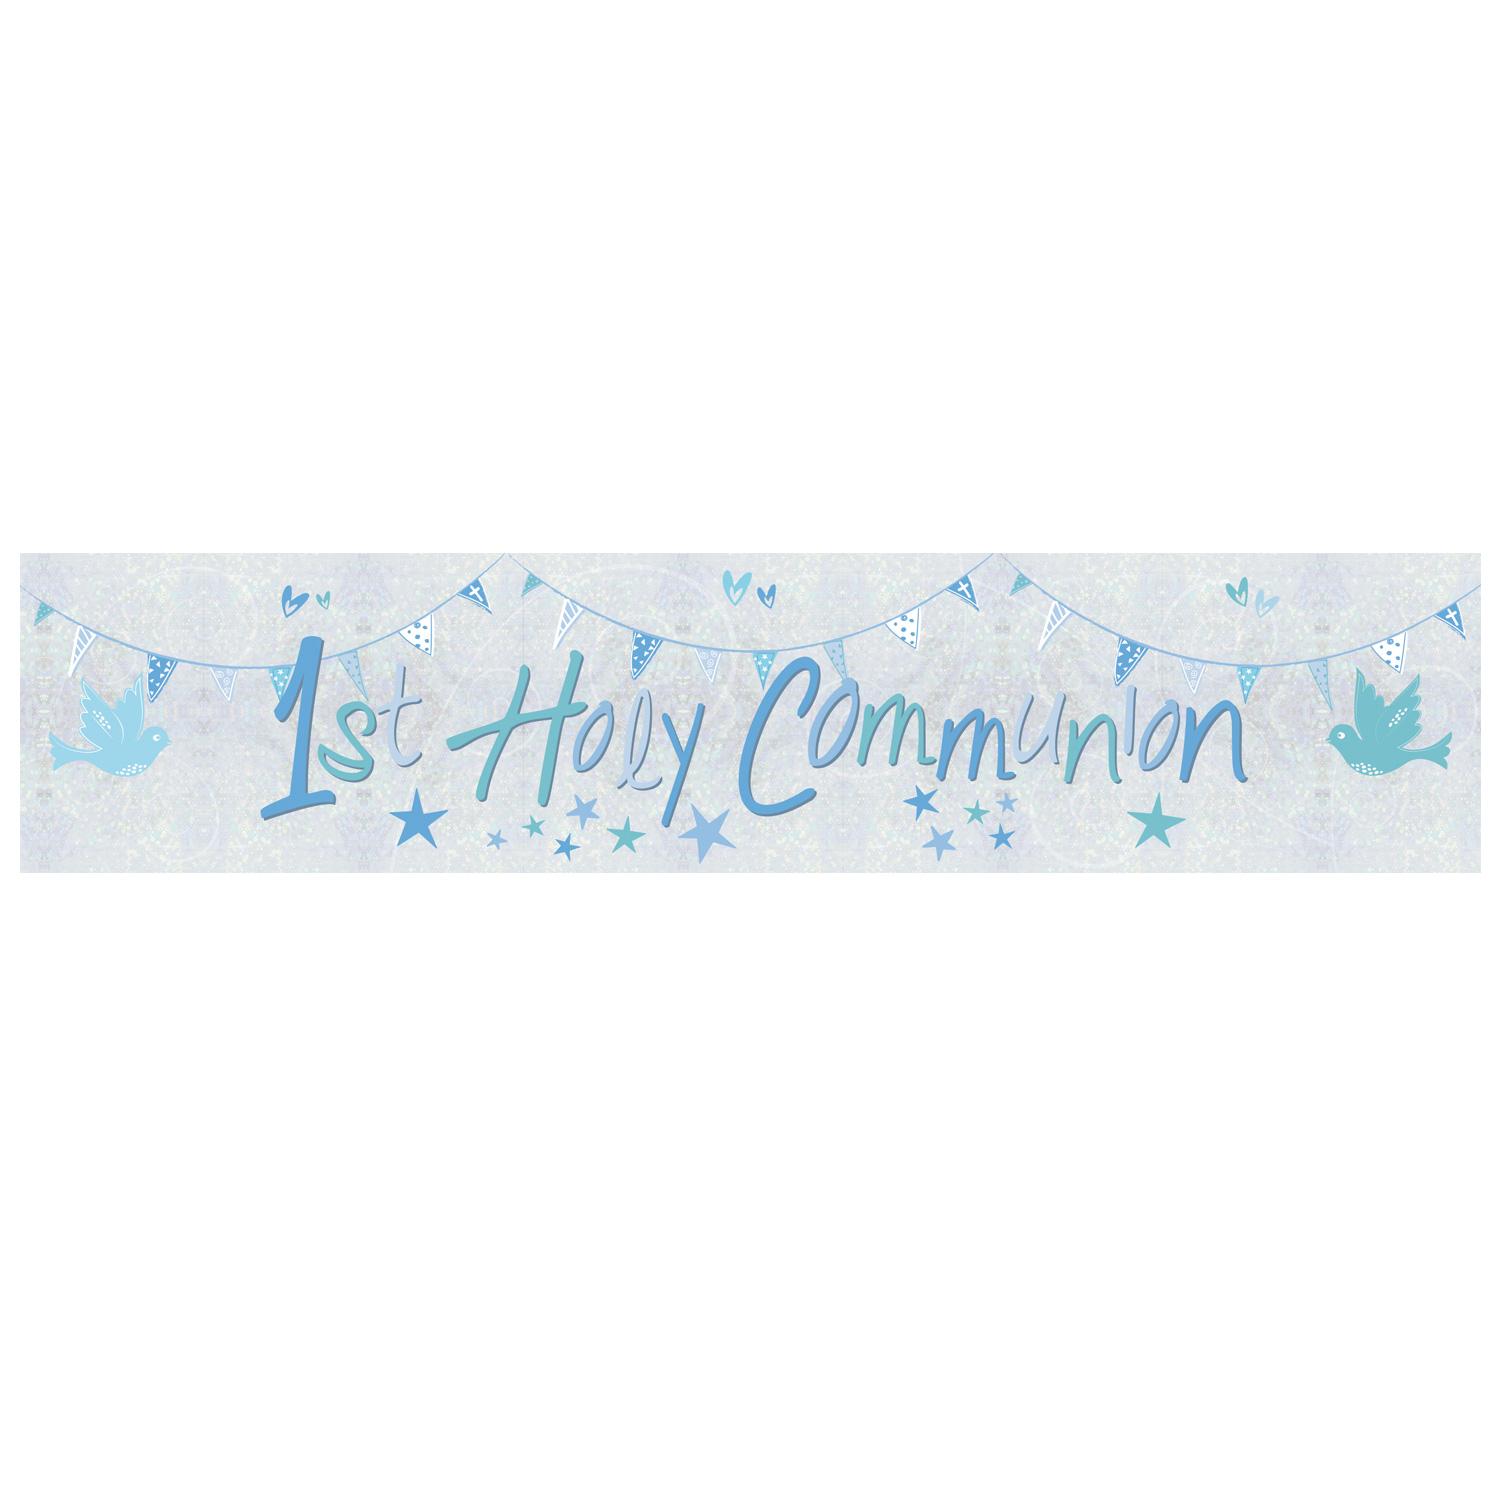 Communion Church Blue Holographic Foil Banner Decorations - Party Centre